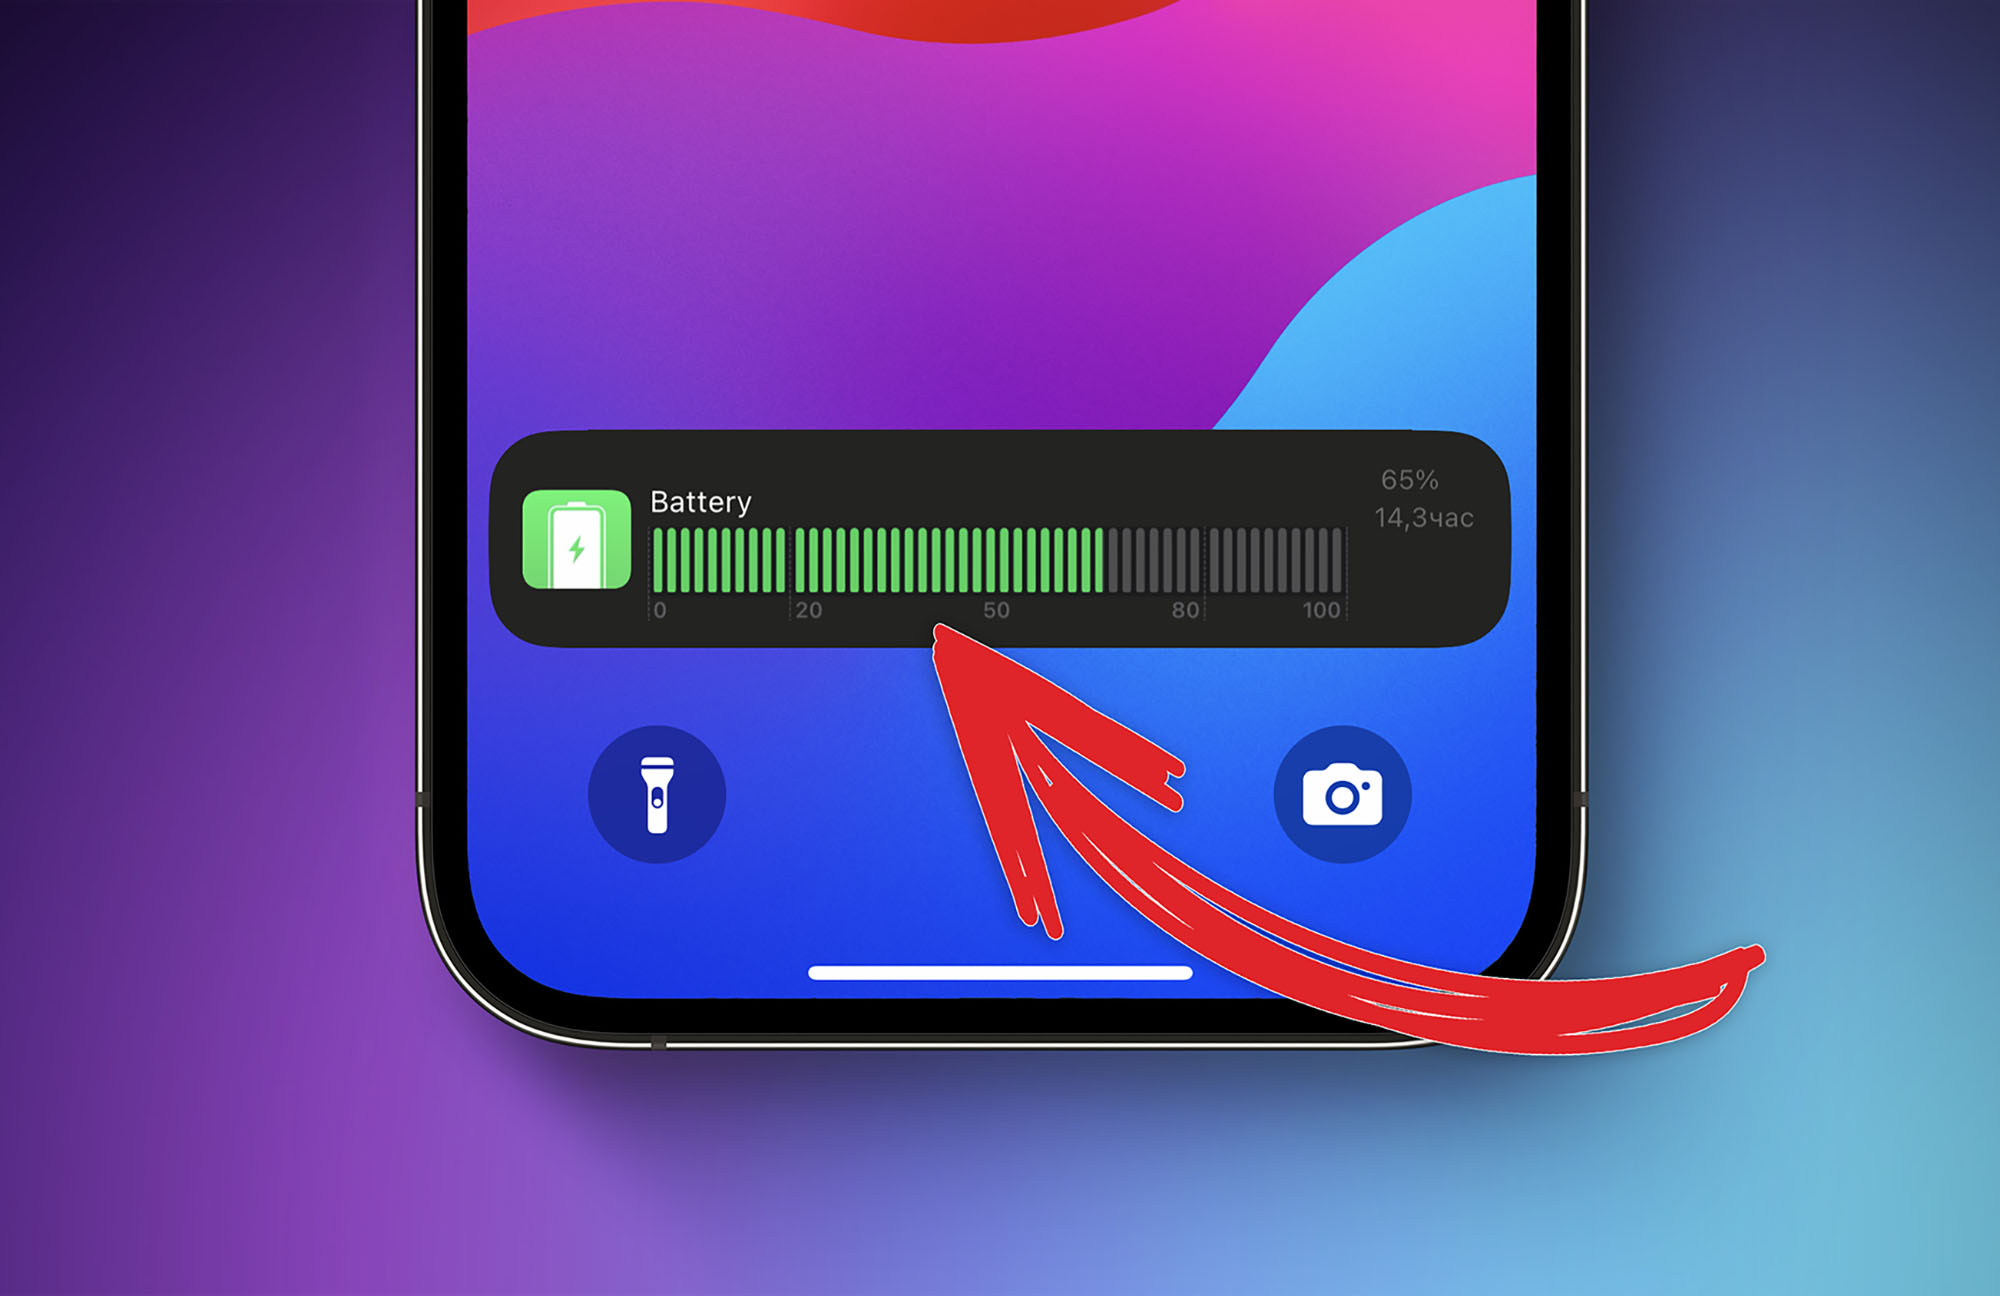 Как на iPhone добавить виджет в нижнюю часть экрана блокировки. Например, сверхподробный статус заряда аккумулятора